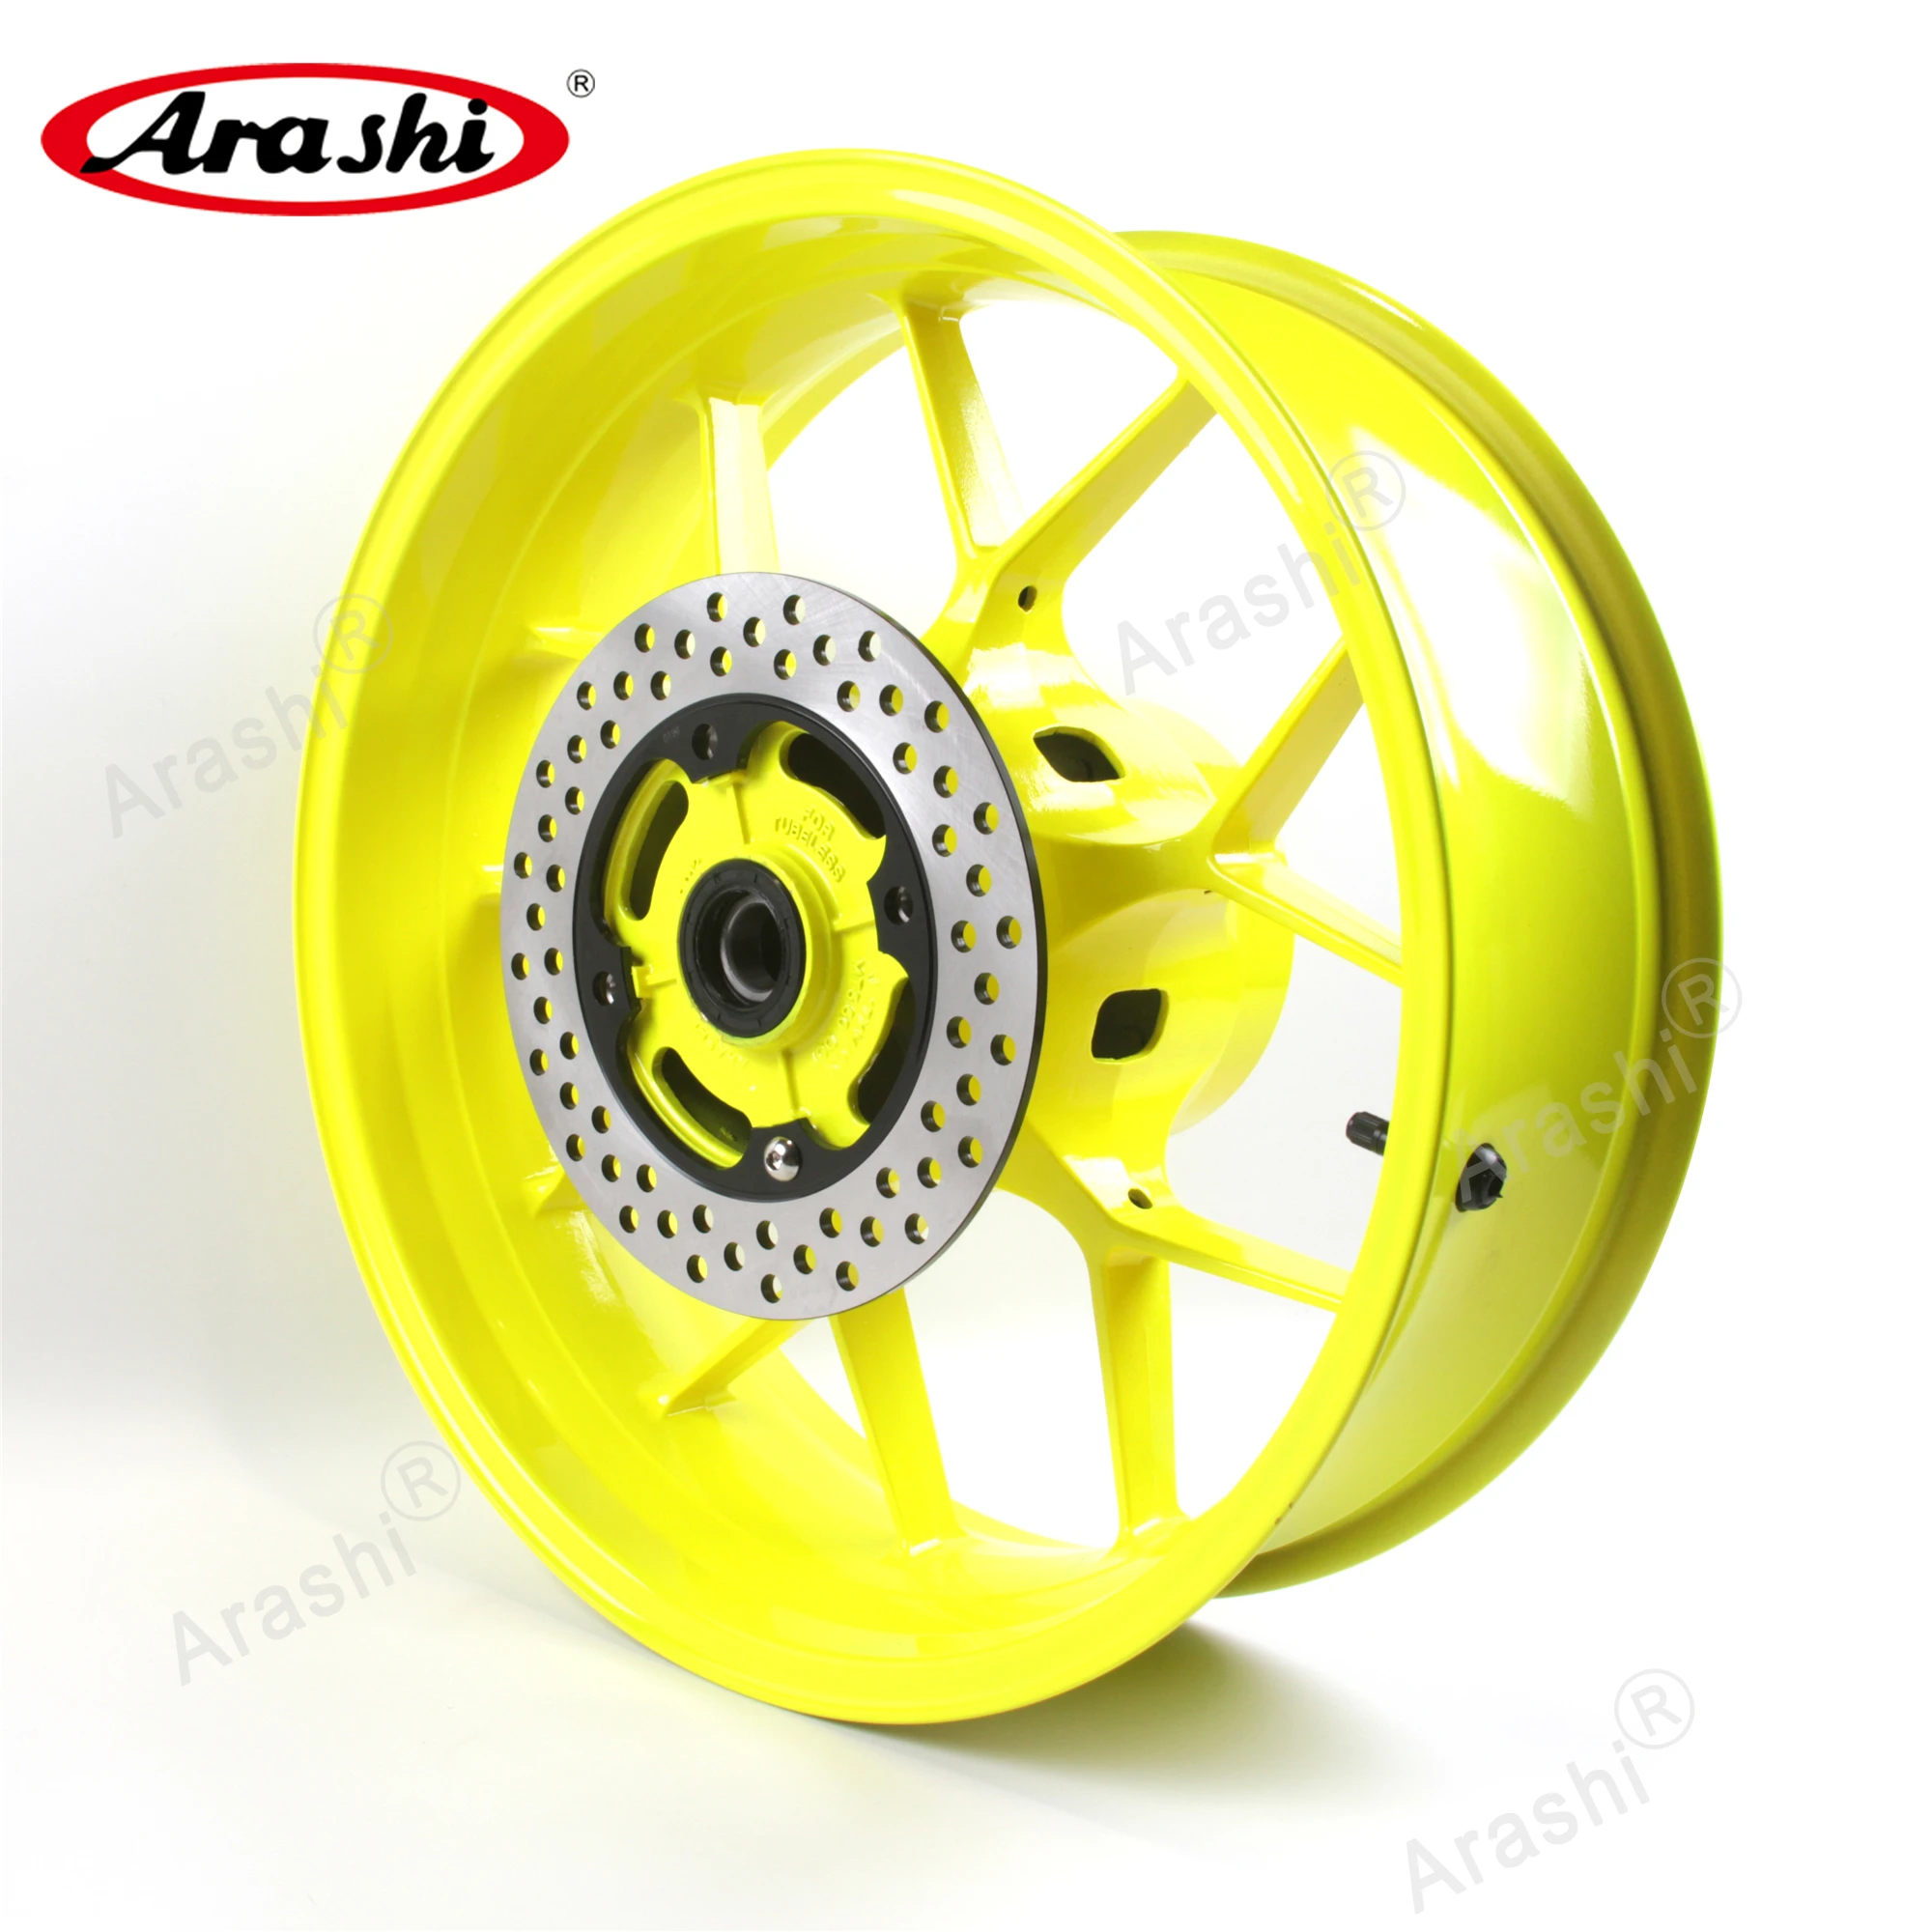 

Arashi For HONDA CBR1000RR 2006 - 2016 Rear Wheel Rim Disc Tire Hub CBR1000 CBR 1000 RR 2007 2008 2009 2010 2011 2012 Motorcycle